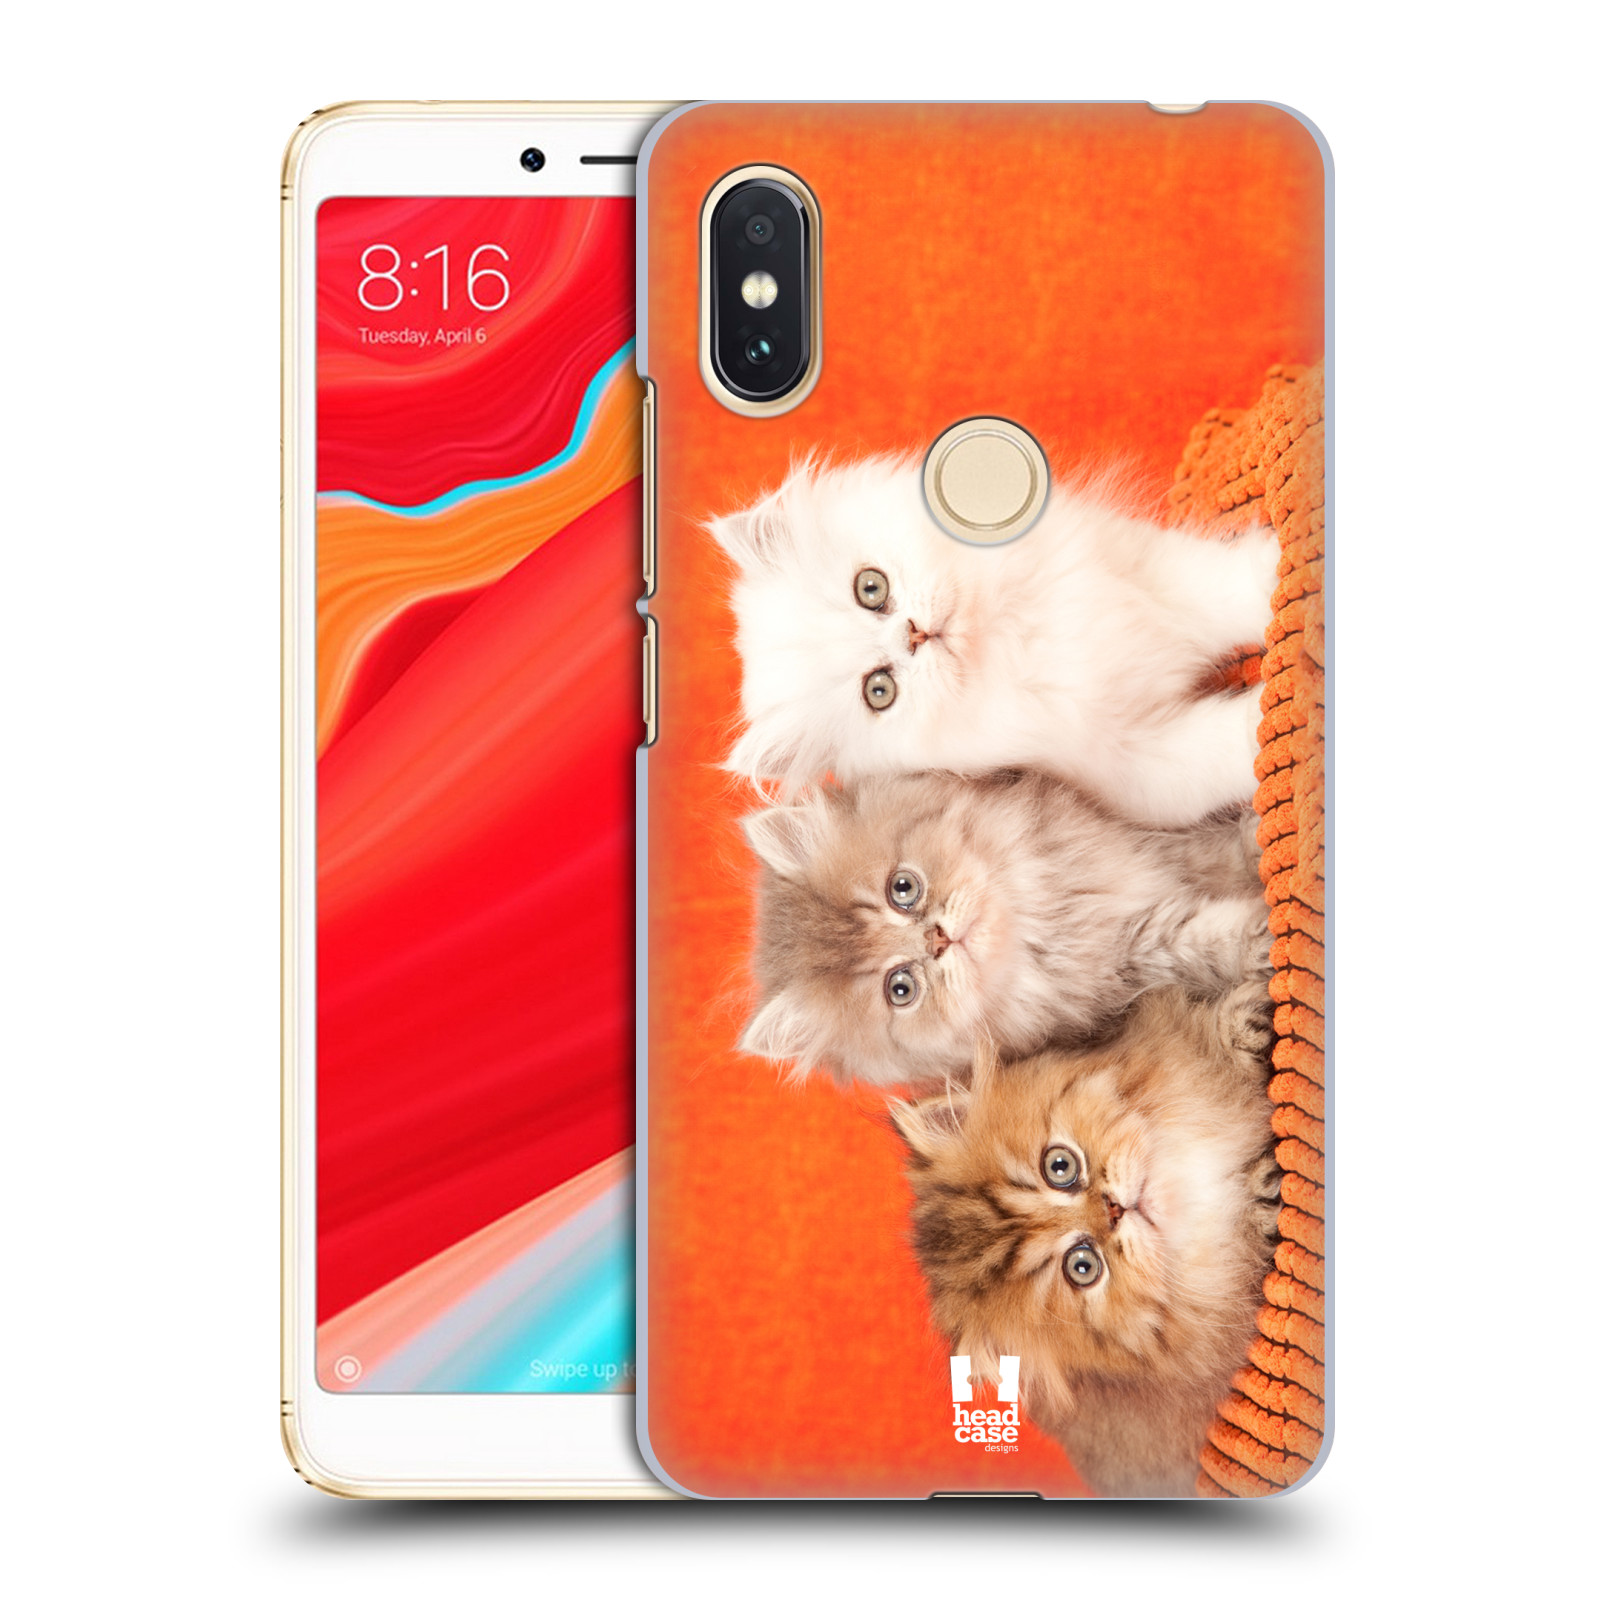 HEAD CASE plastový obal na mobil Xiaomi Redmi S2 vzor Kočičky koťata foto 3 kočky